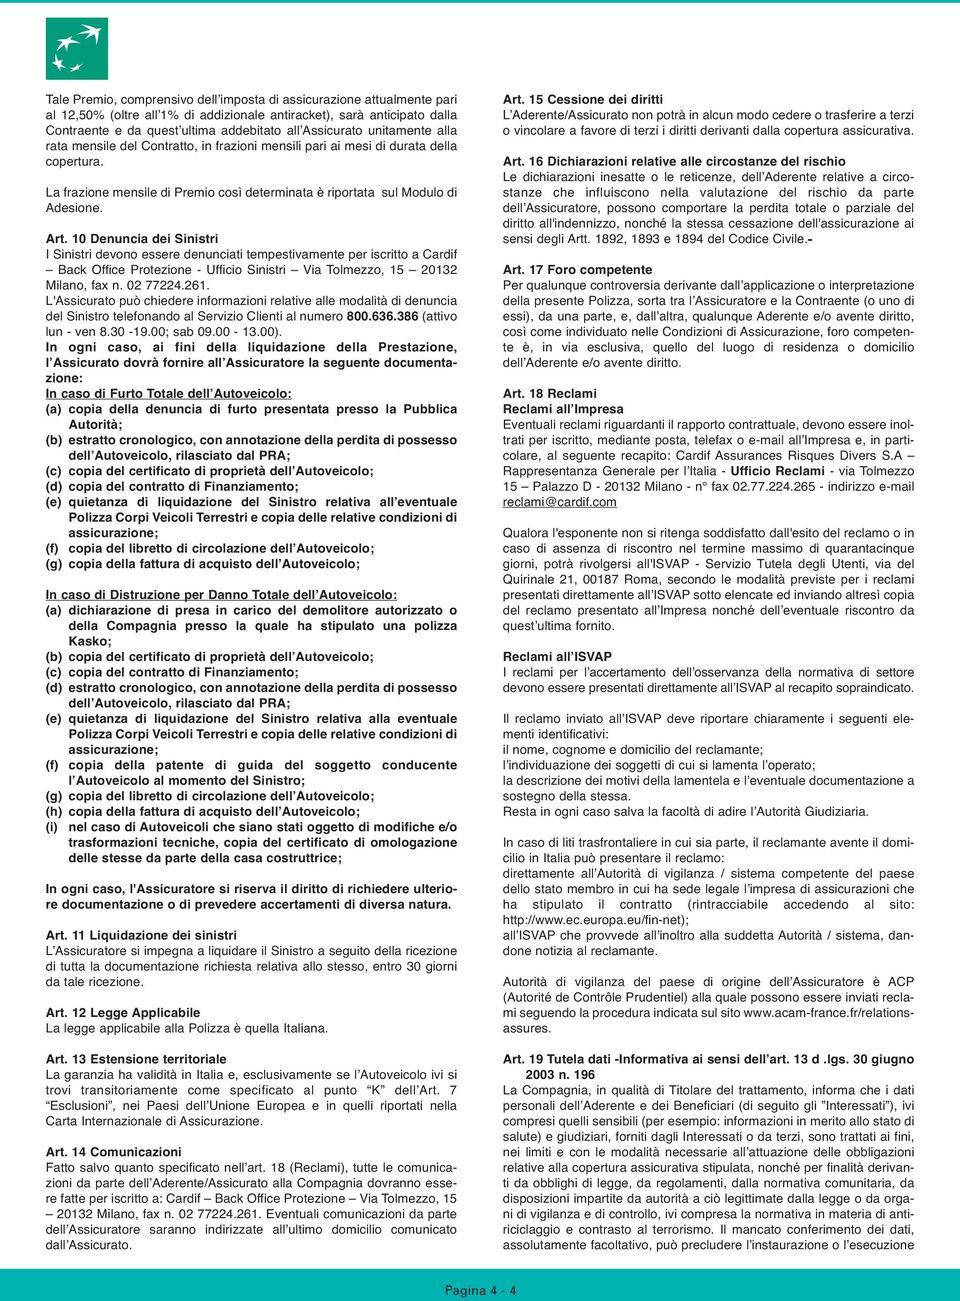 Art. 10 Denuncia dei Sinistri I Sinistri devono essere denunciati tempestivamente per iscritto a Cardif Back Office Protezione - Ufficio Sinistri Via Tolmezzo, 15 20132 Milano, fax n. 02 77224.261.